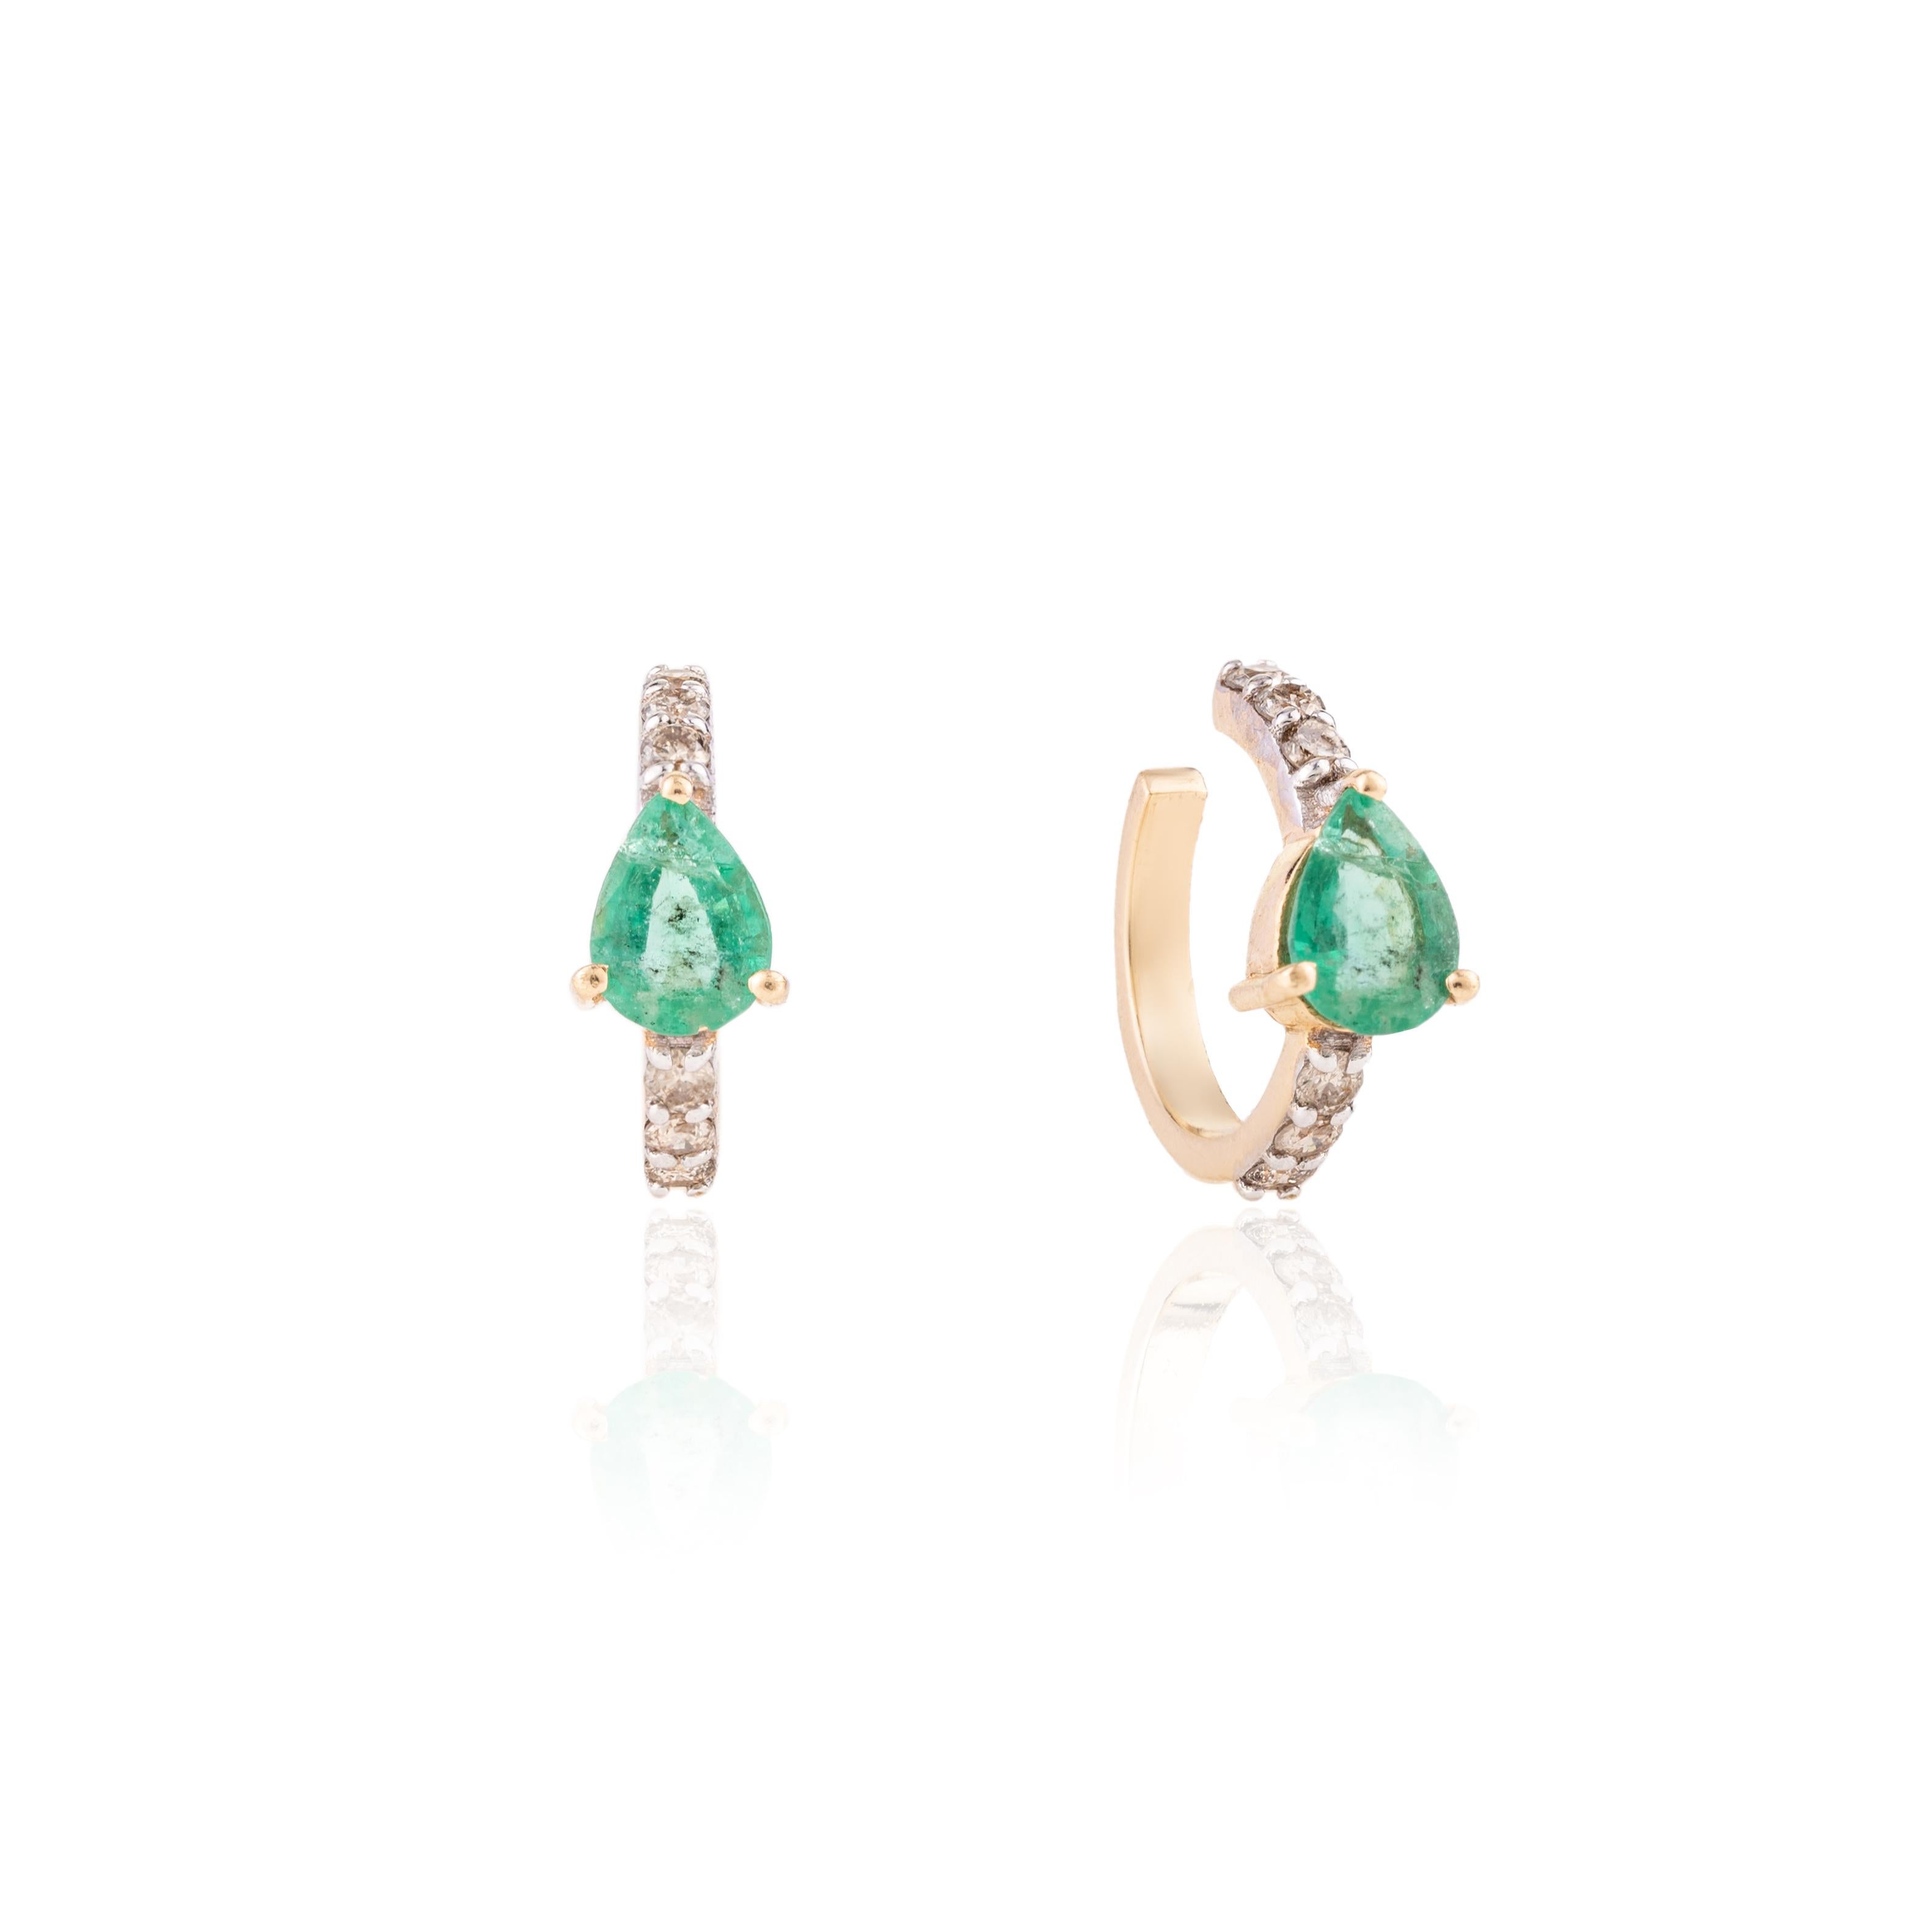 Les délicates boucles d'oreilles Emerald Diamond Helix Cuff en or 18 carats vous permettront d'affirmer votre look. Vous aurez besoin de boucles d'oreilles en forme d'hélix pour affirmer votre look. Ces boucles d'oreilles créent un look étincelant